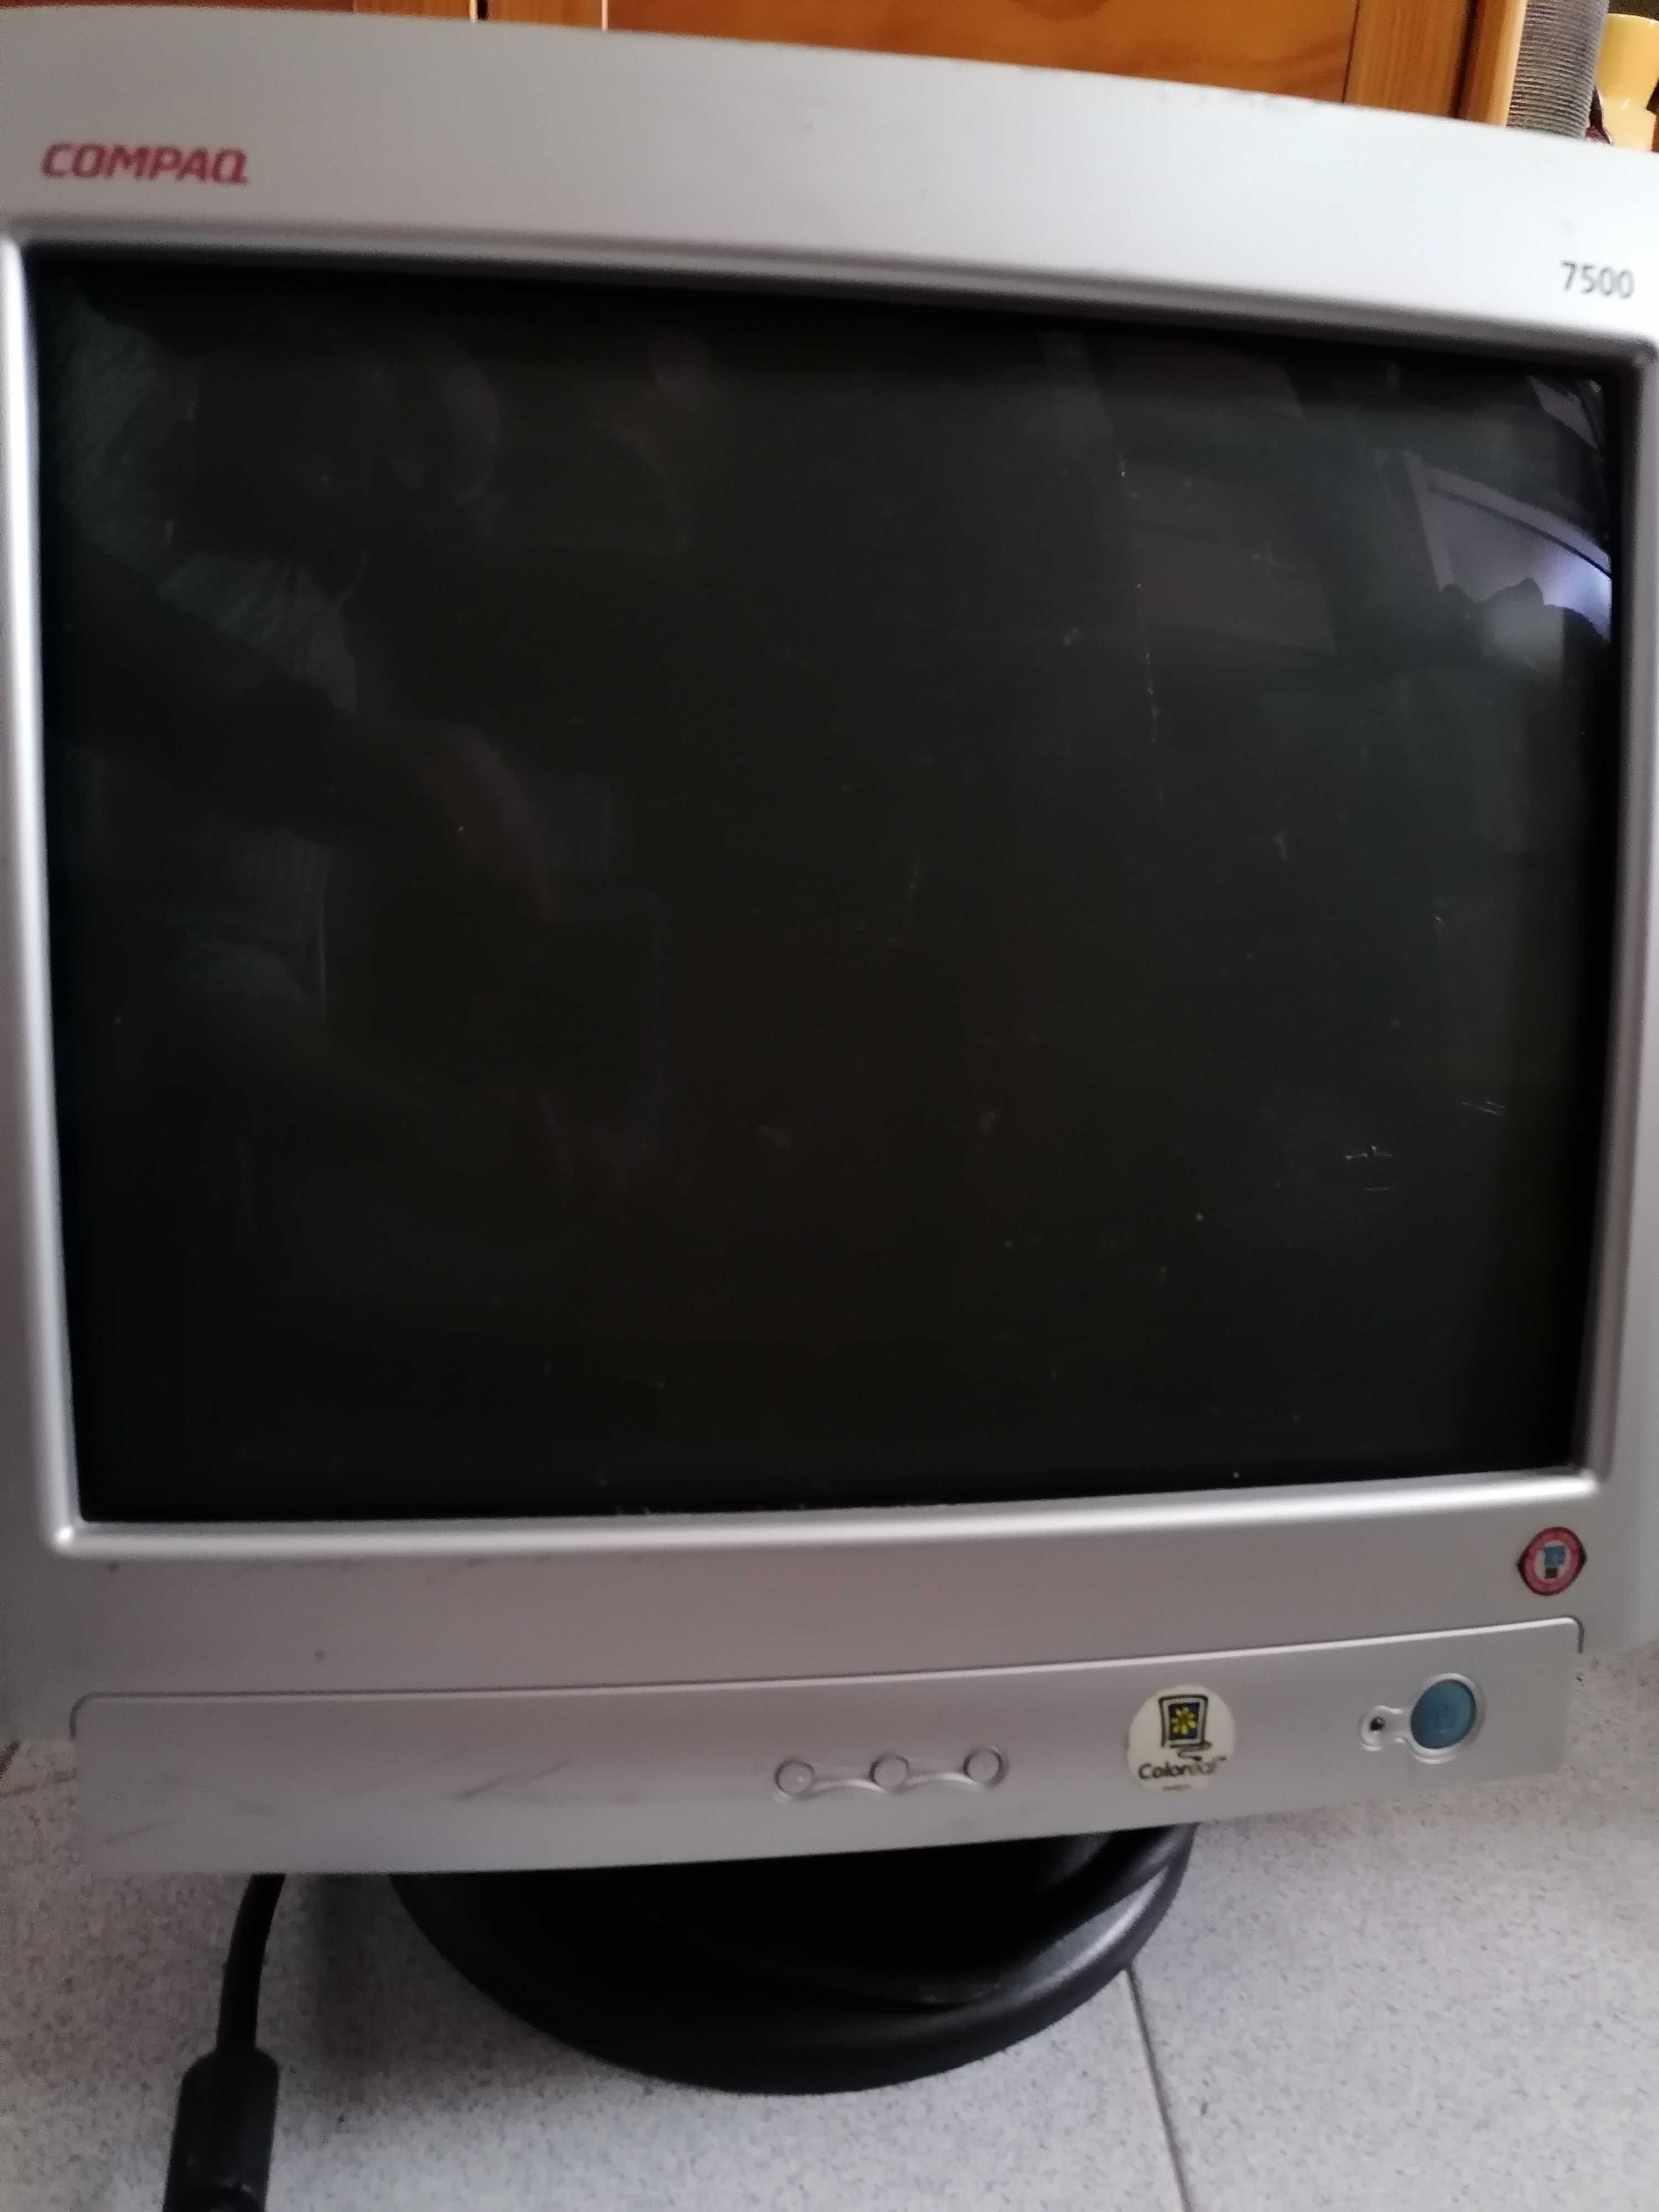 Vendo Monitor Compaq 7500